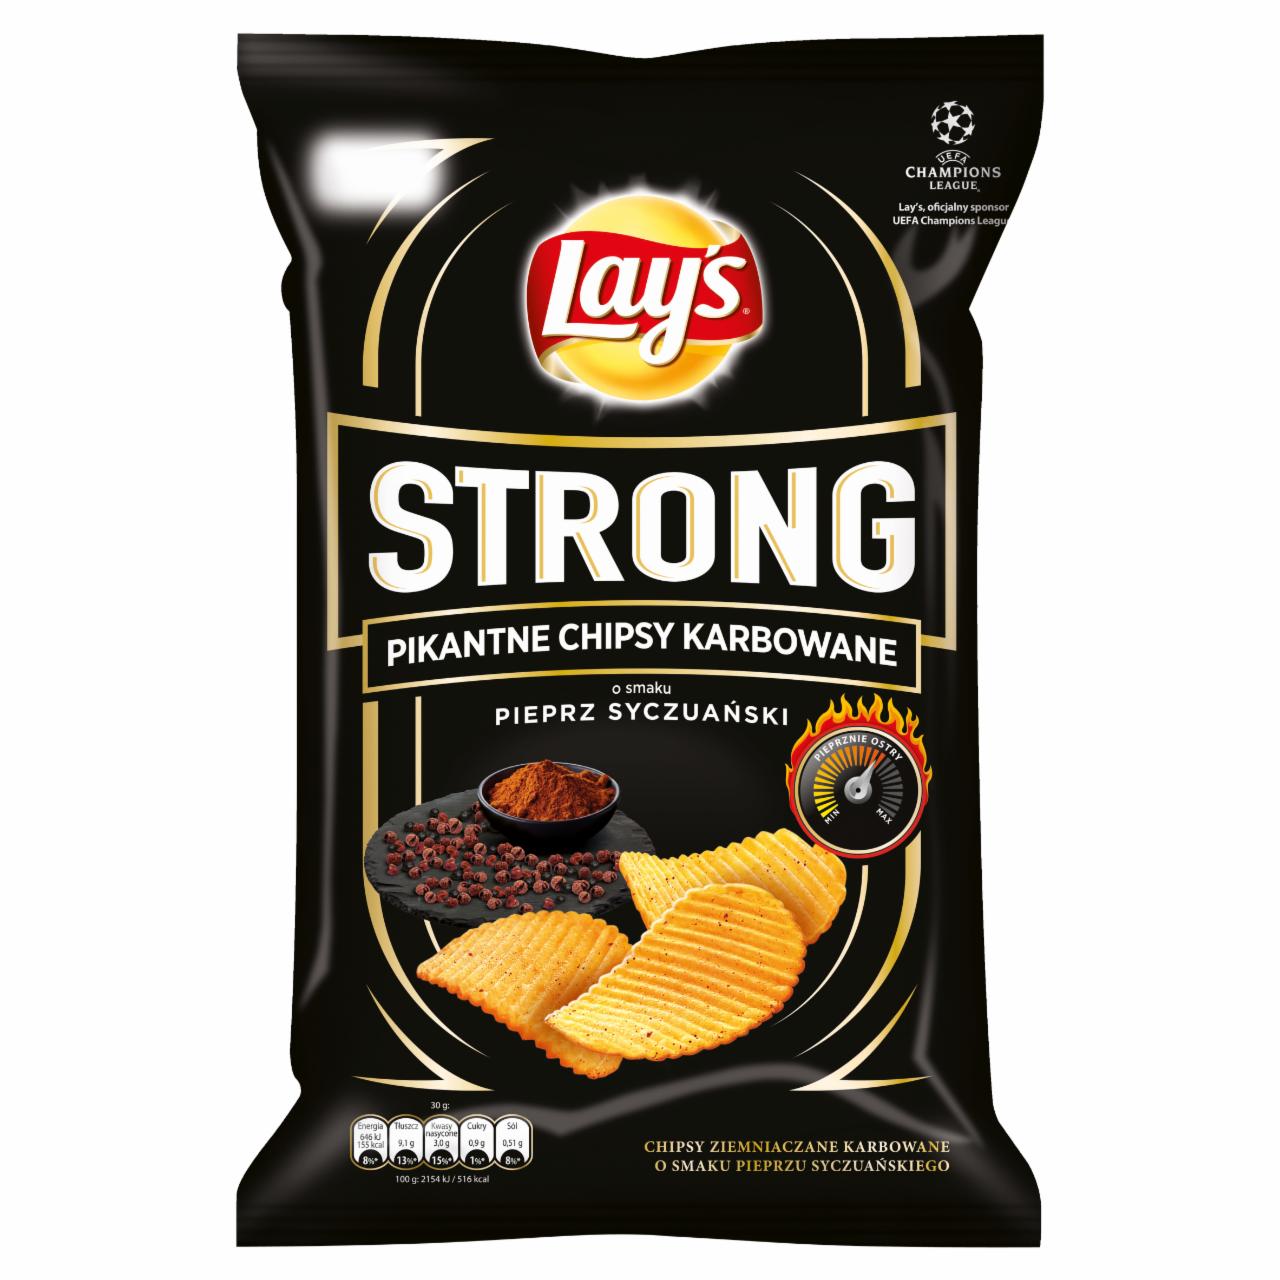 Zdjęcia - Lay's Strong Pikantne chipsy karbowane o smaku pieprz syczuański 150 g